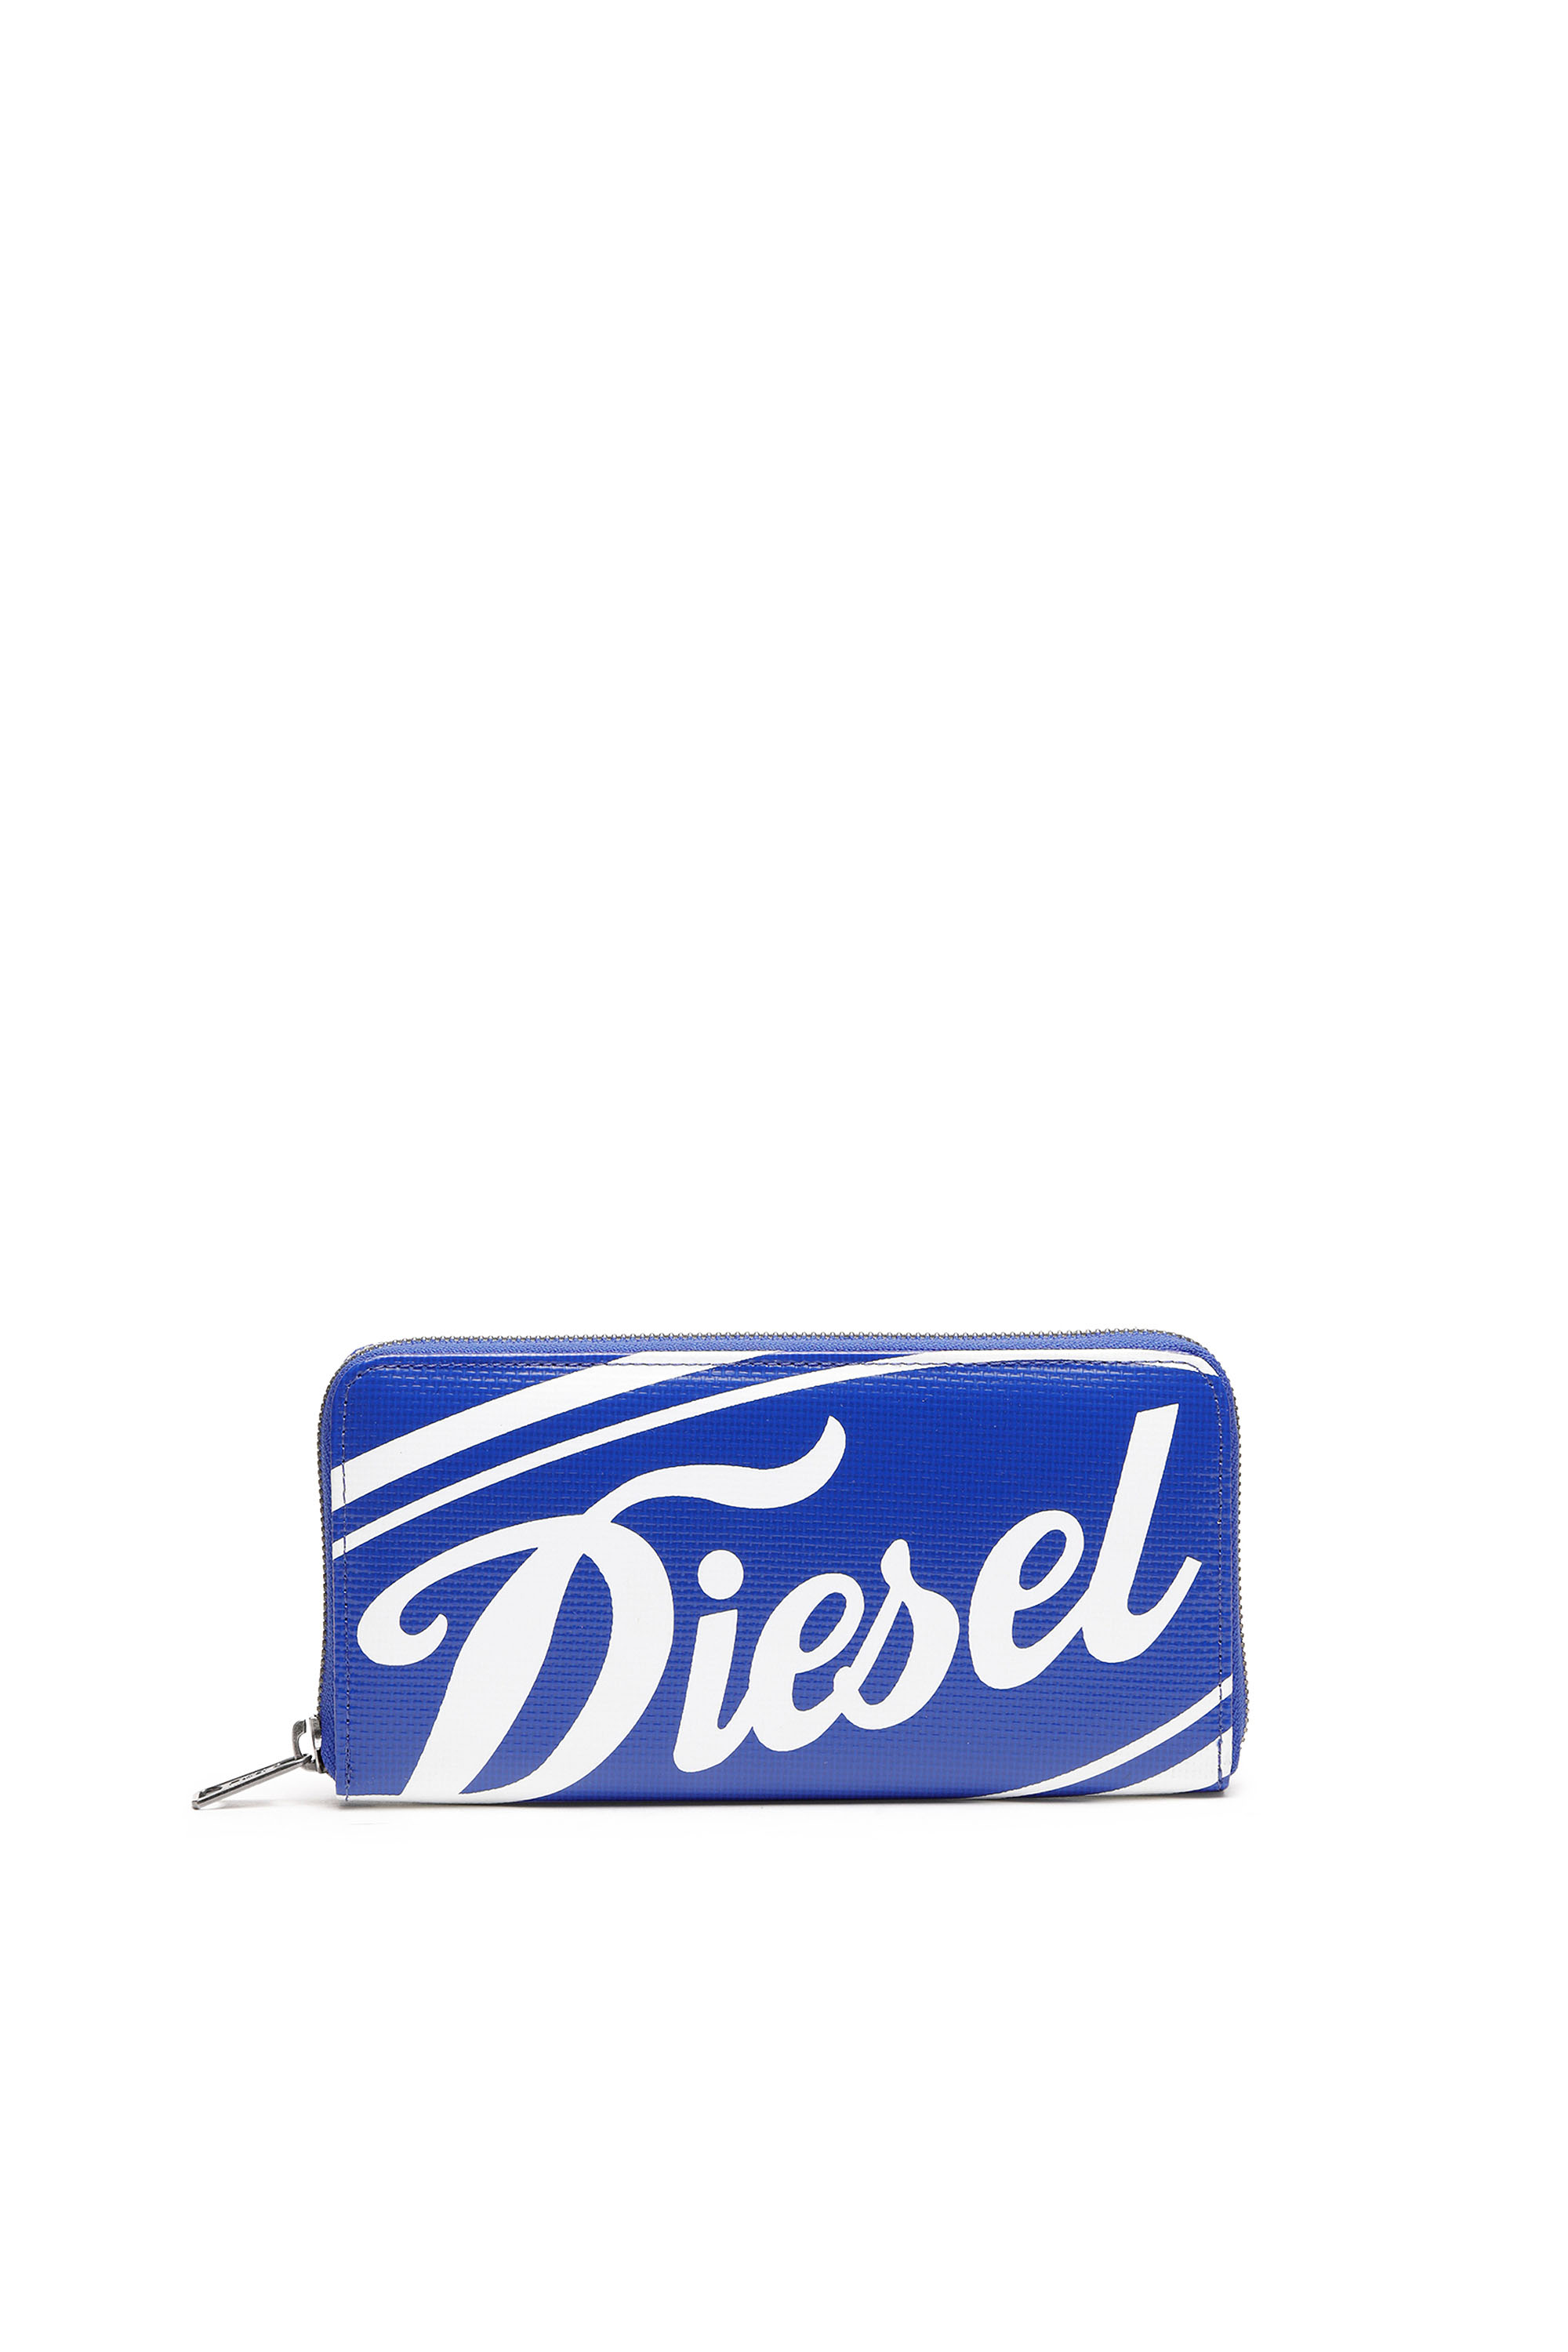 Diesel - 24 ZIP, Blue/White - Image 1